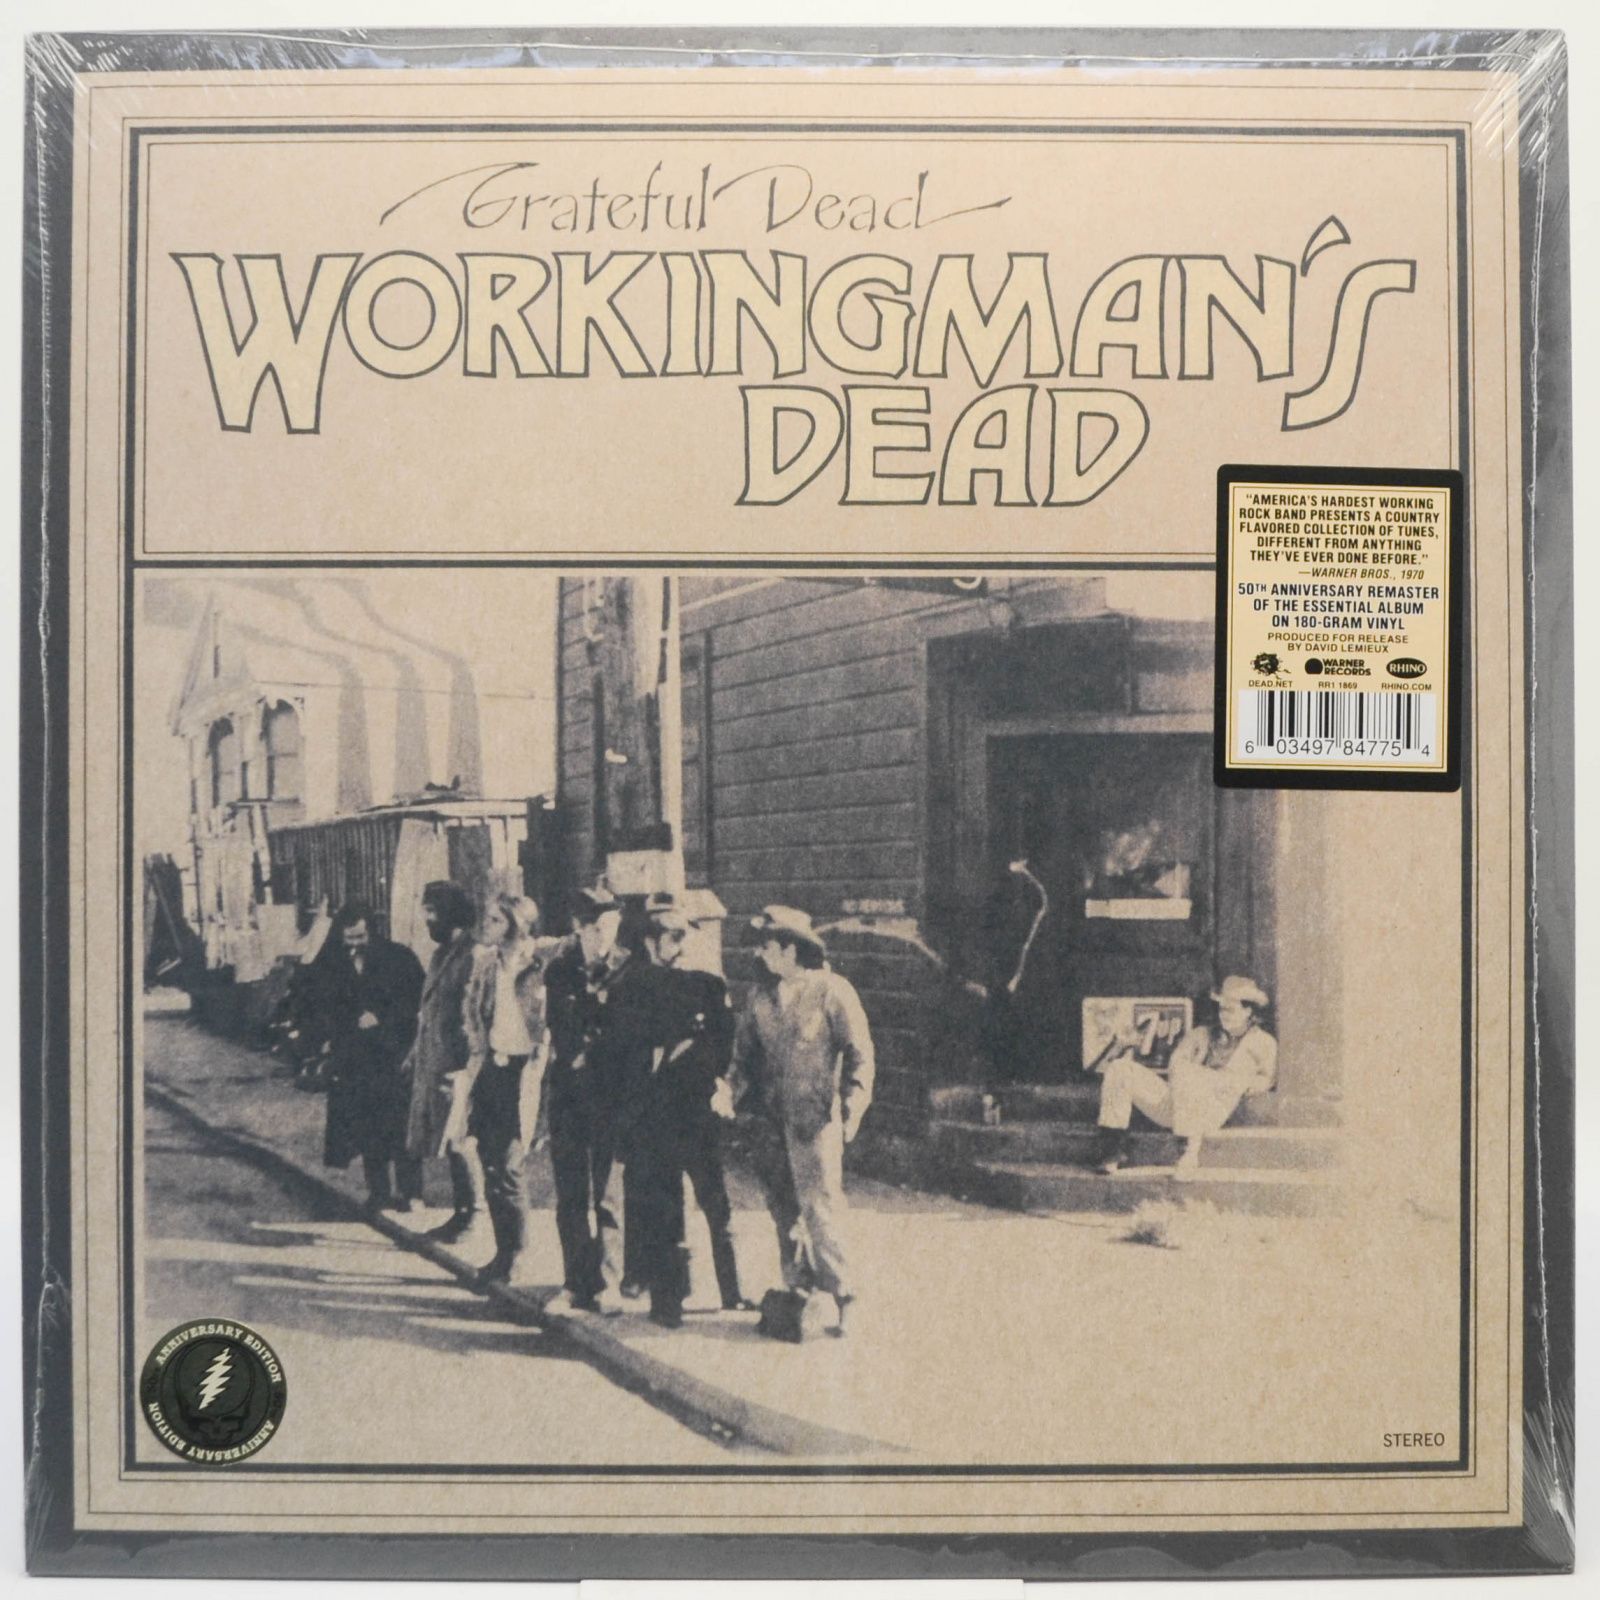 Grateful Dead — Workingman's Dead, 1970